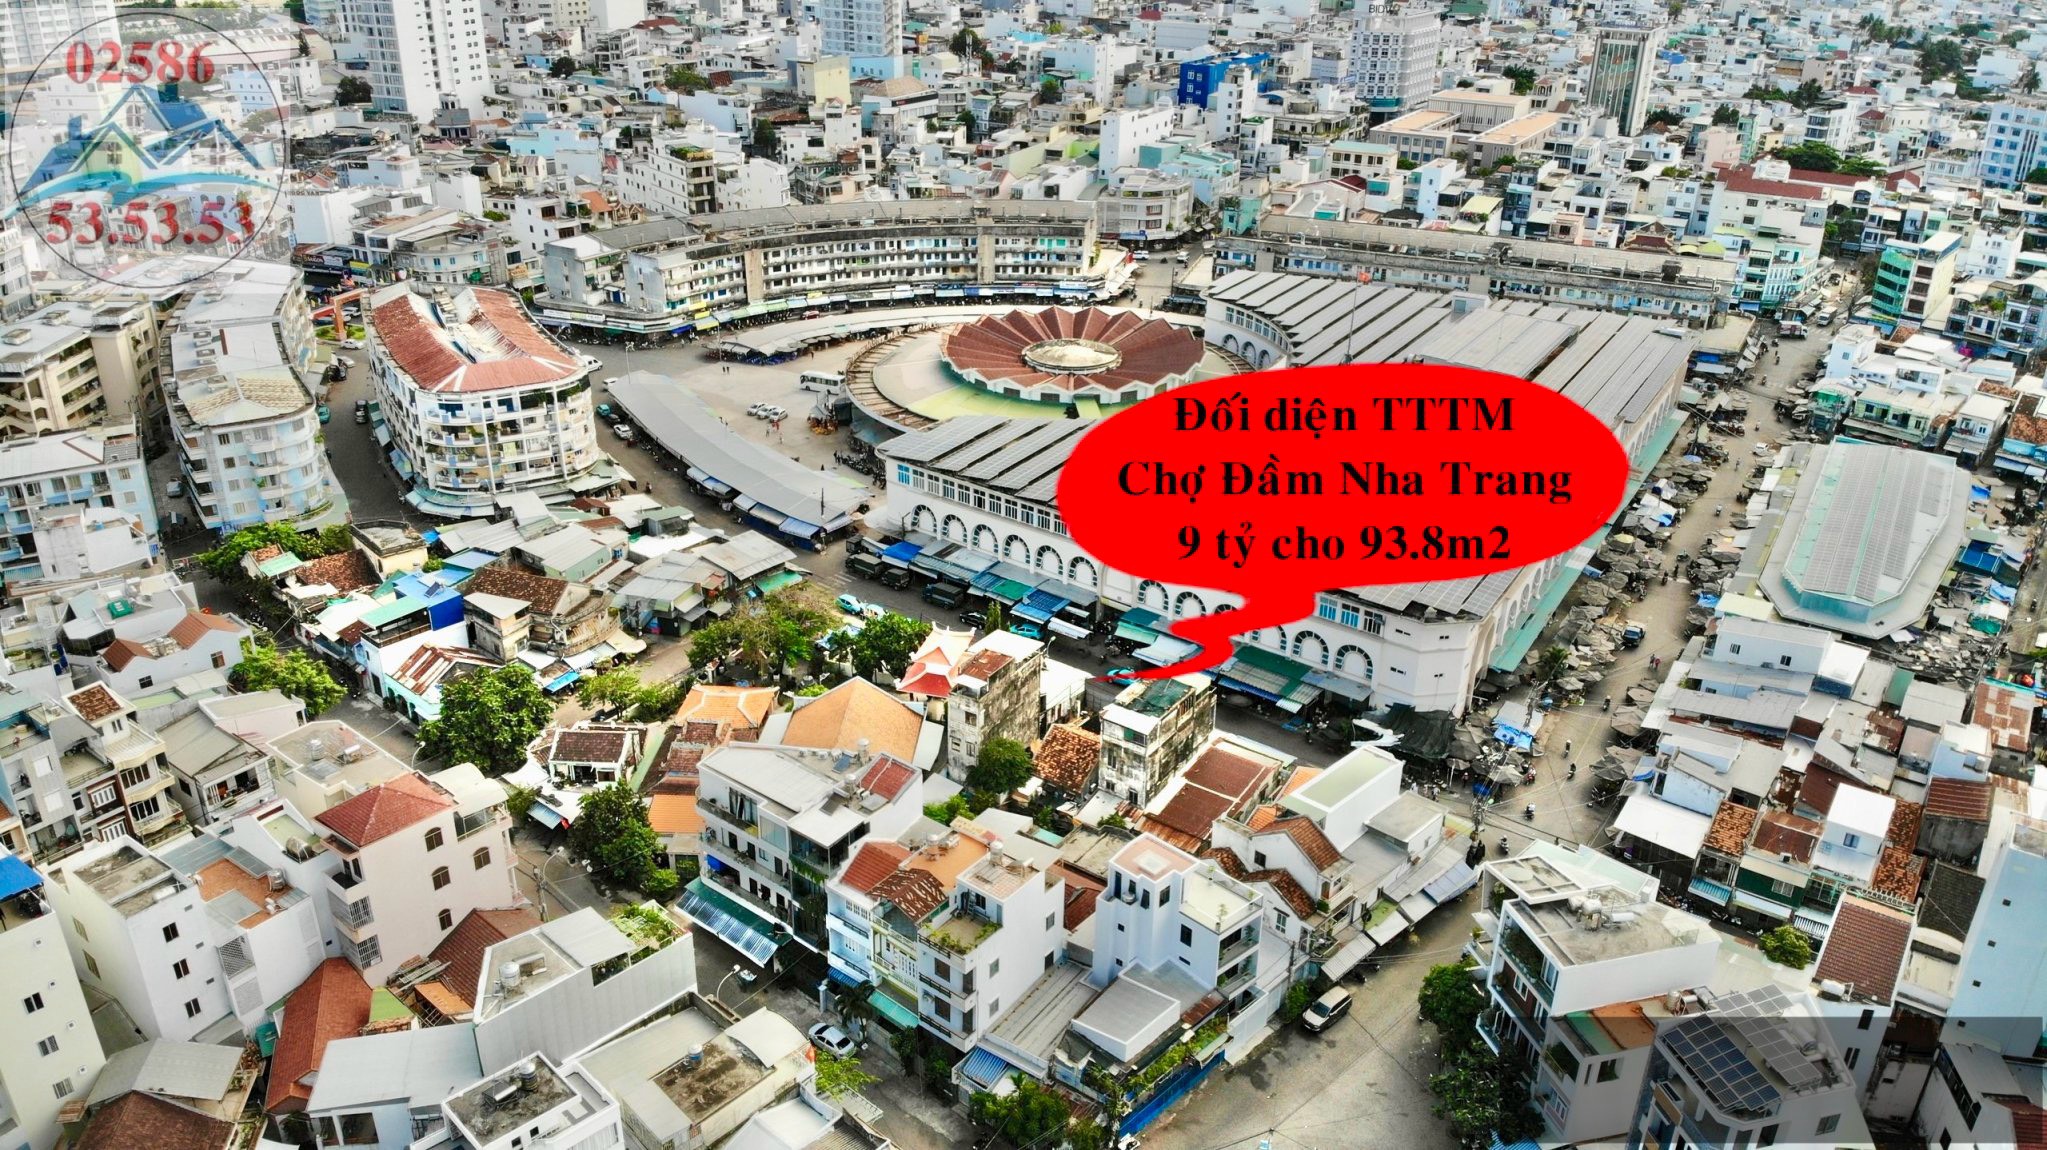 Đất đối diện chợ đầm tròn Nha Trang. Trung tâm thương mại lớn nhất nha trang diện tích 93.8m2 full - Ảnh 1